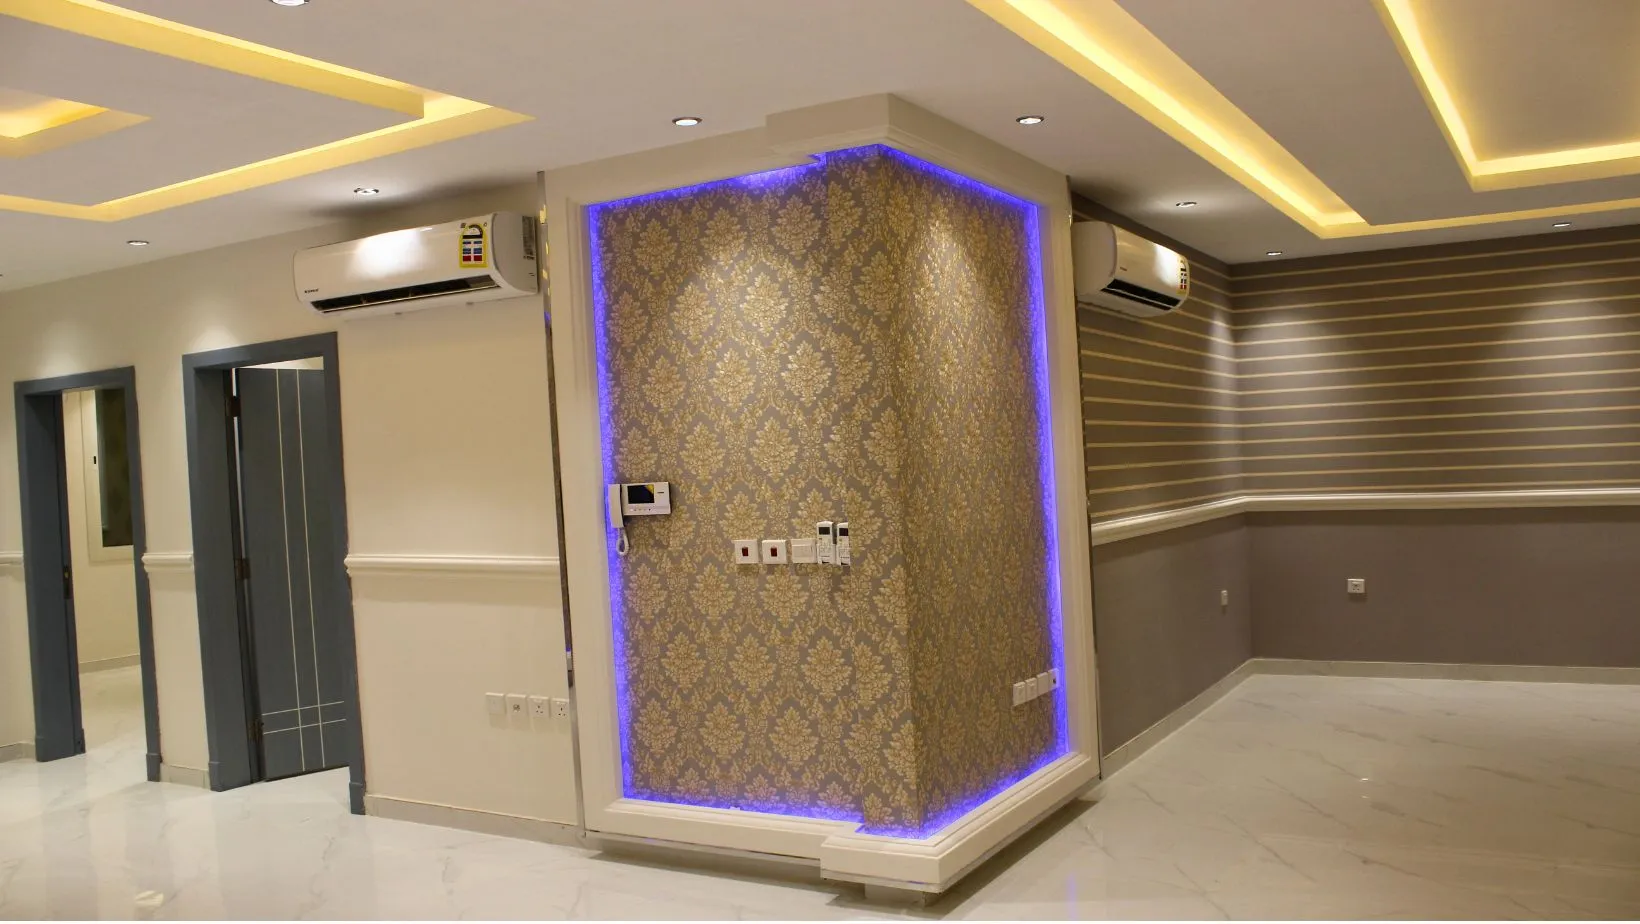 شقق كينج الضباب بالعليا لللإيجار الرياض، King Dhabab apartments in Olaya for rent, Riyadh